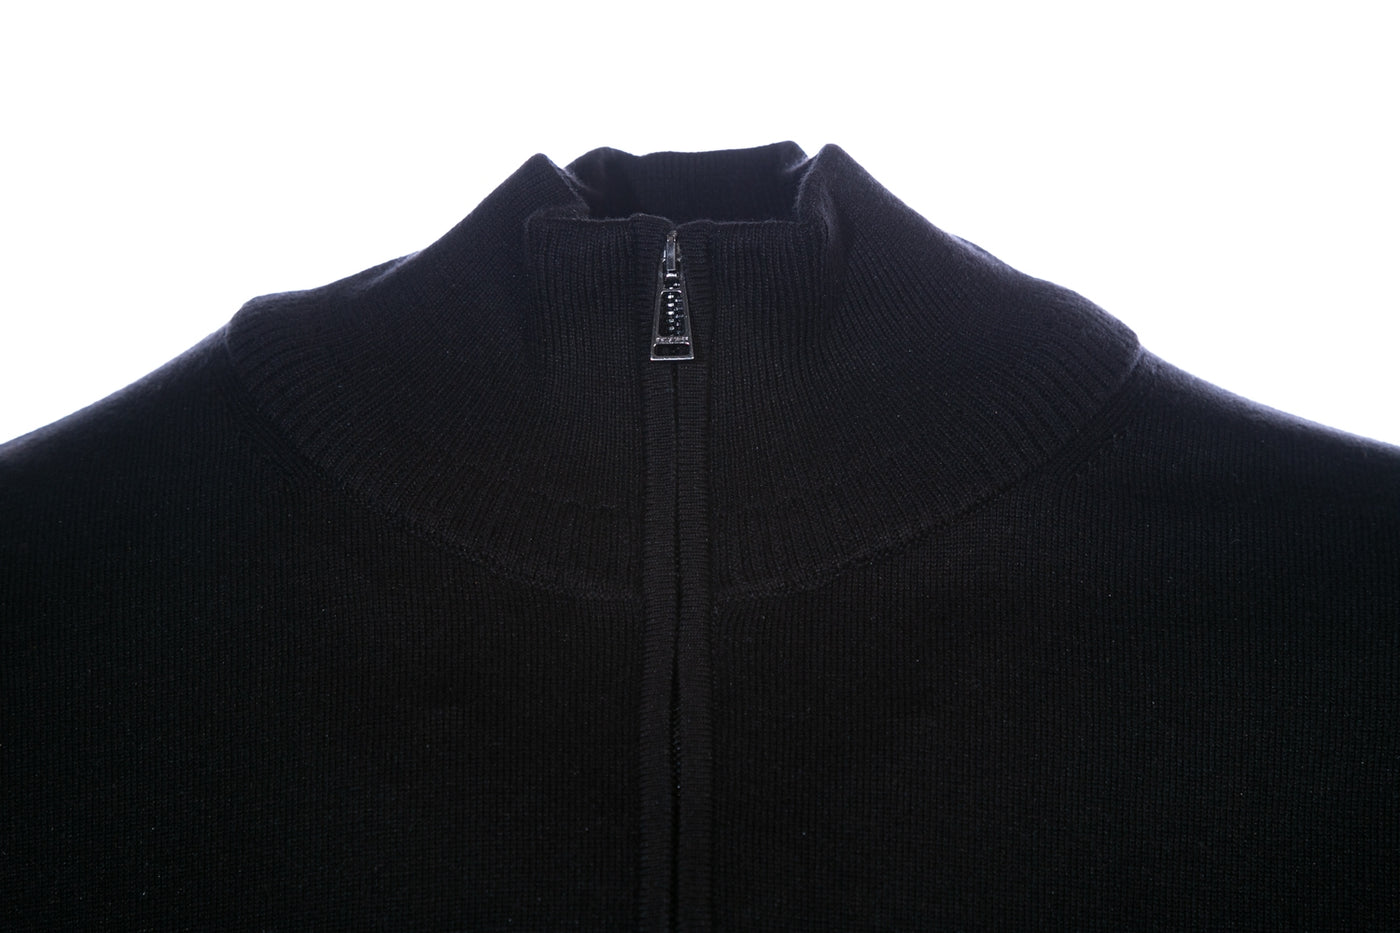 Belstaff Bay Half Zip Knitwear in Black